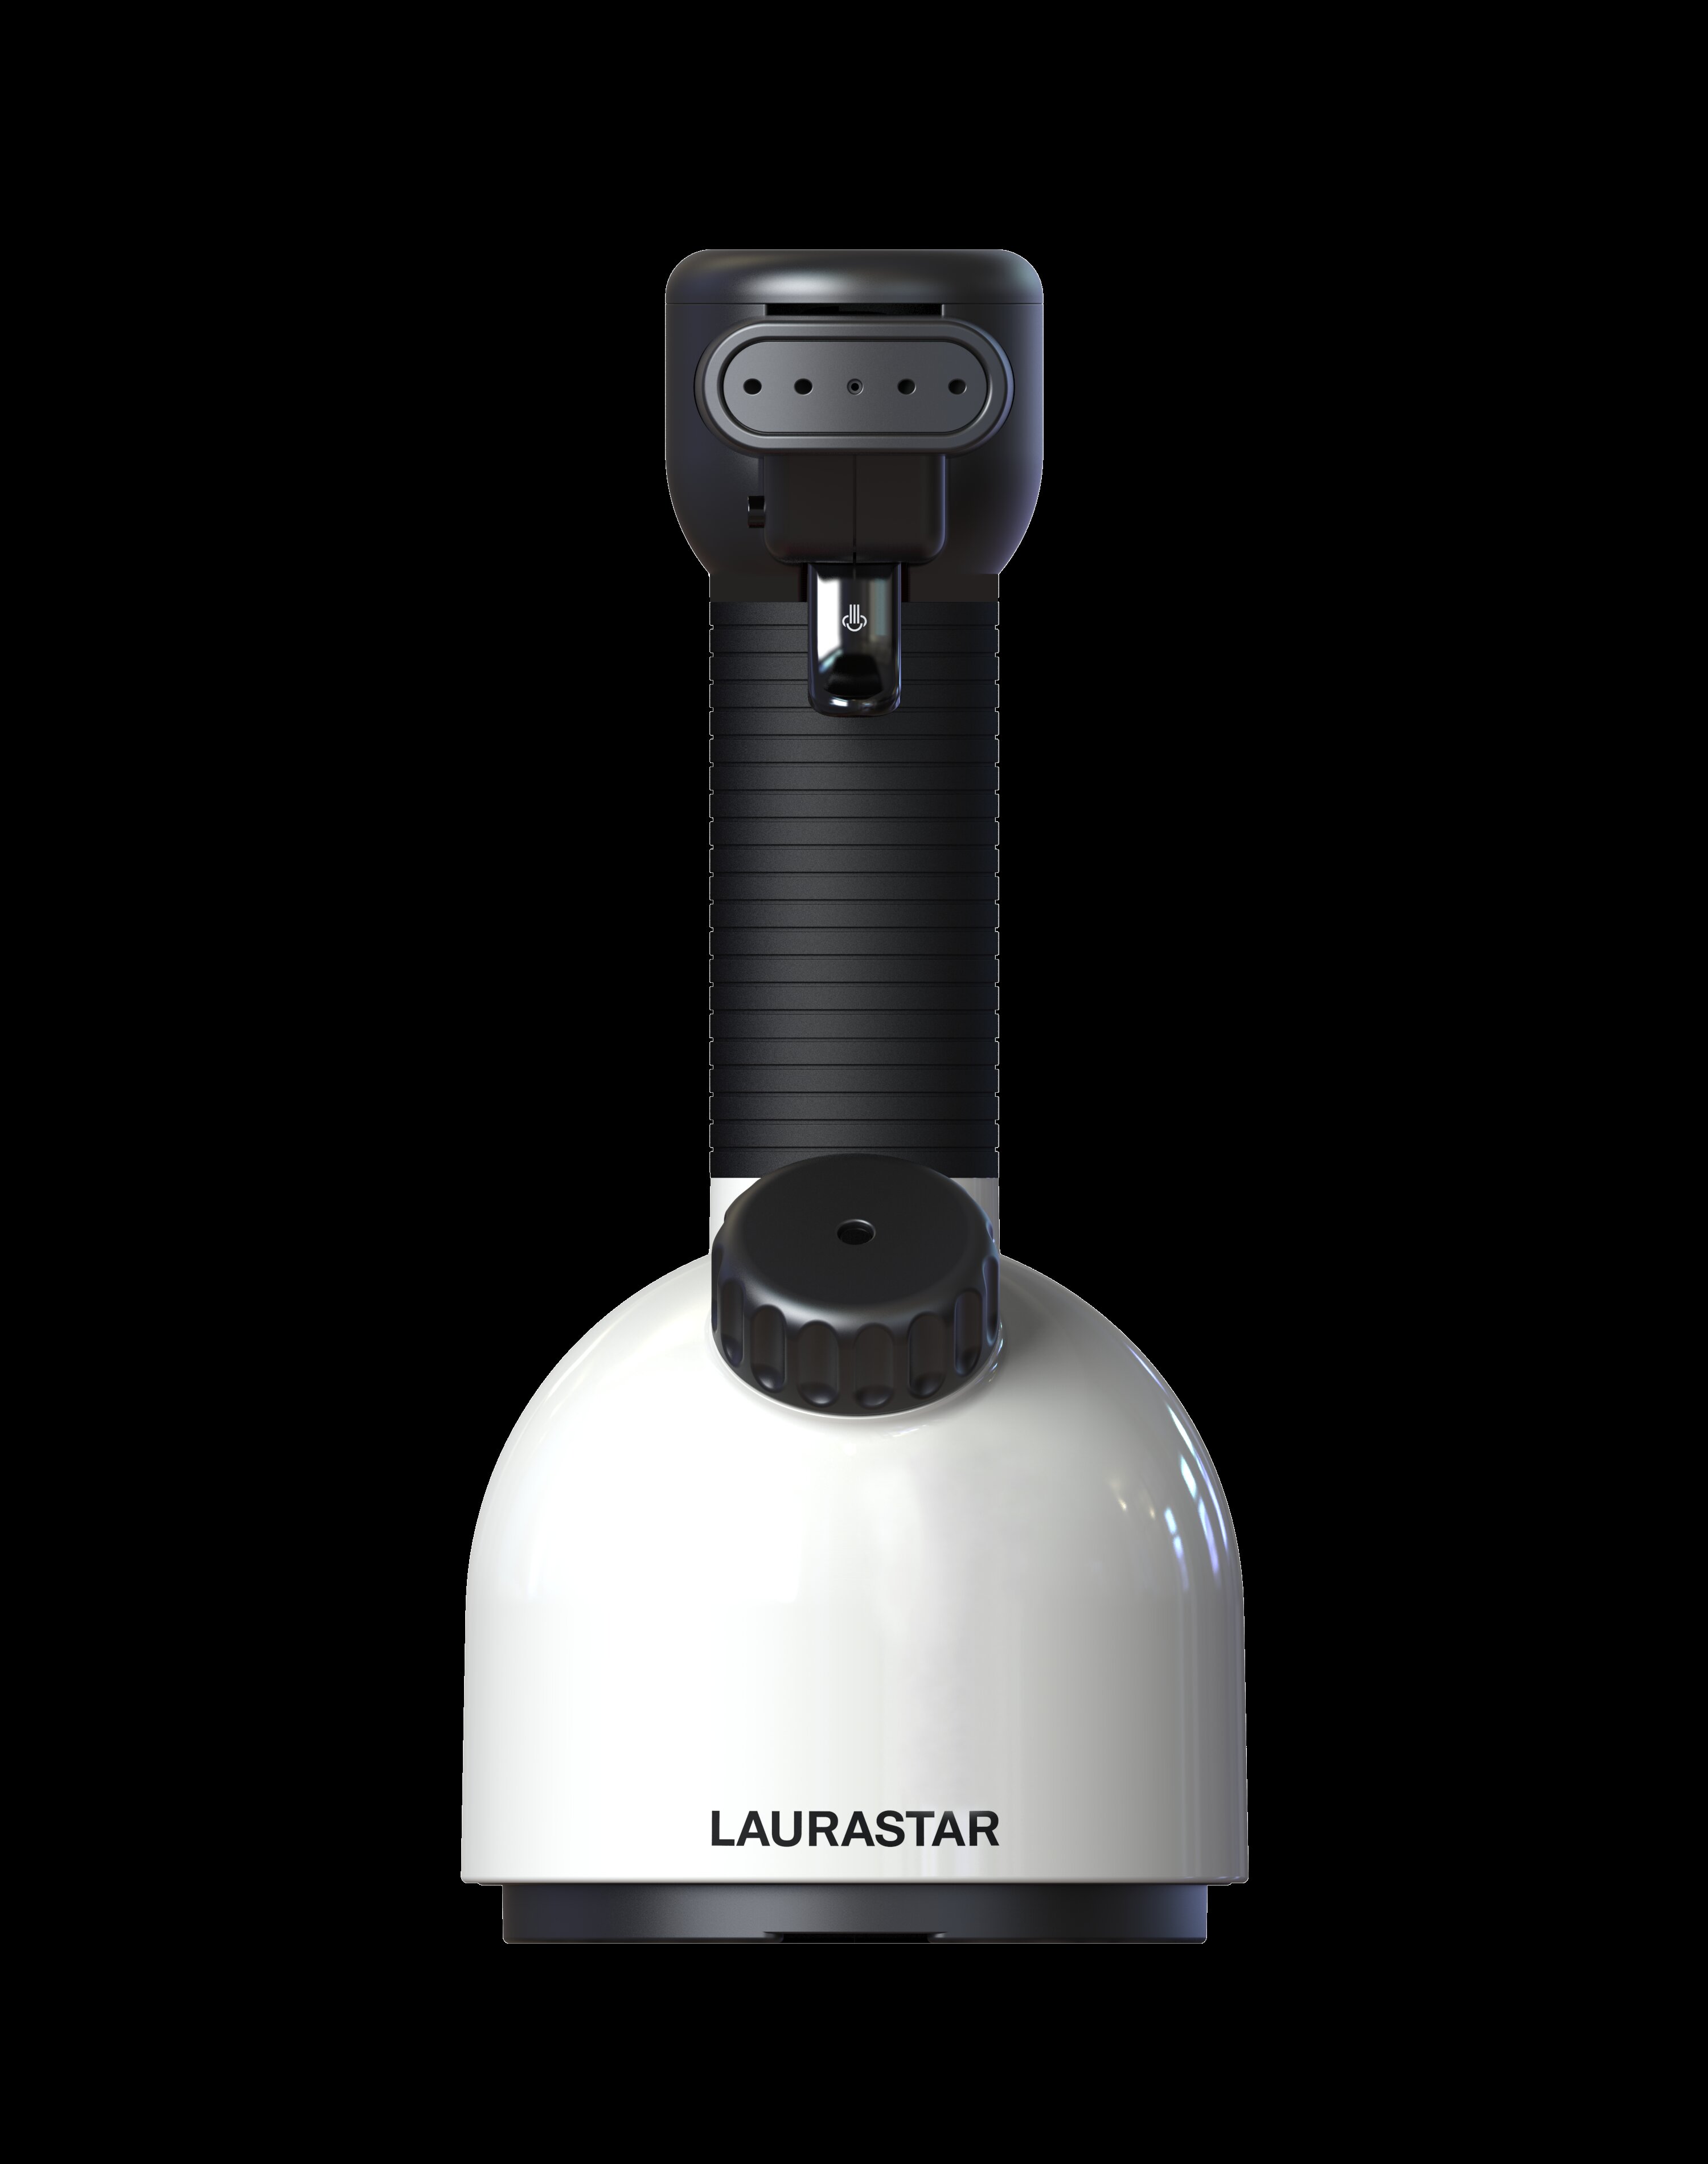 Laurastar 1600 Watt Handheld Steamer & Reviews | Wayfair